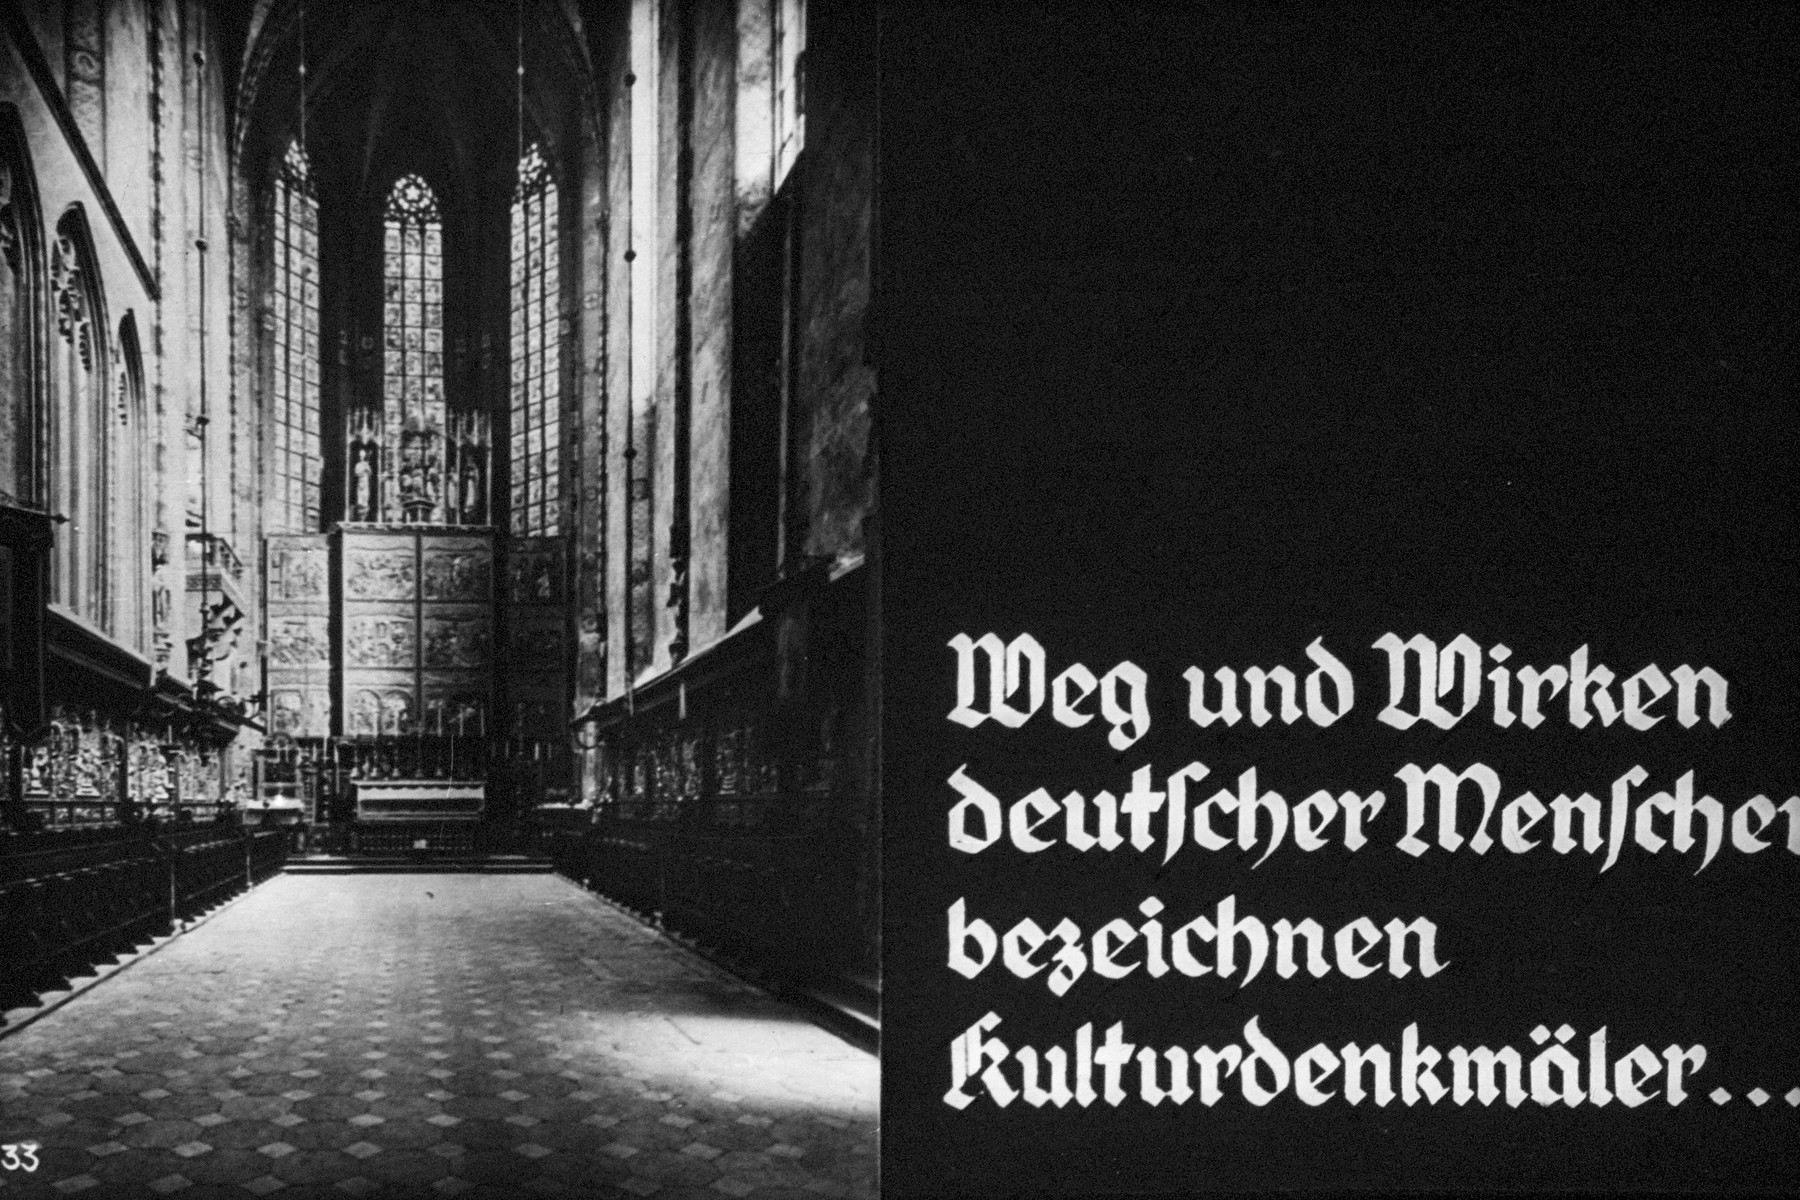 33th Nazi propaganda slide of a Hitler Youth educational presentation entitled "German Achievements in the East" (G 2)

Weg und Wirken deutscher Menscher bezeichnen kulturdenkmäler...
//
Way and work of German people describe cultural monuments...